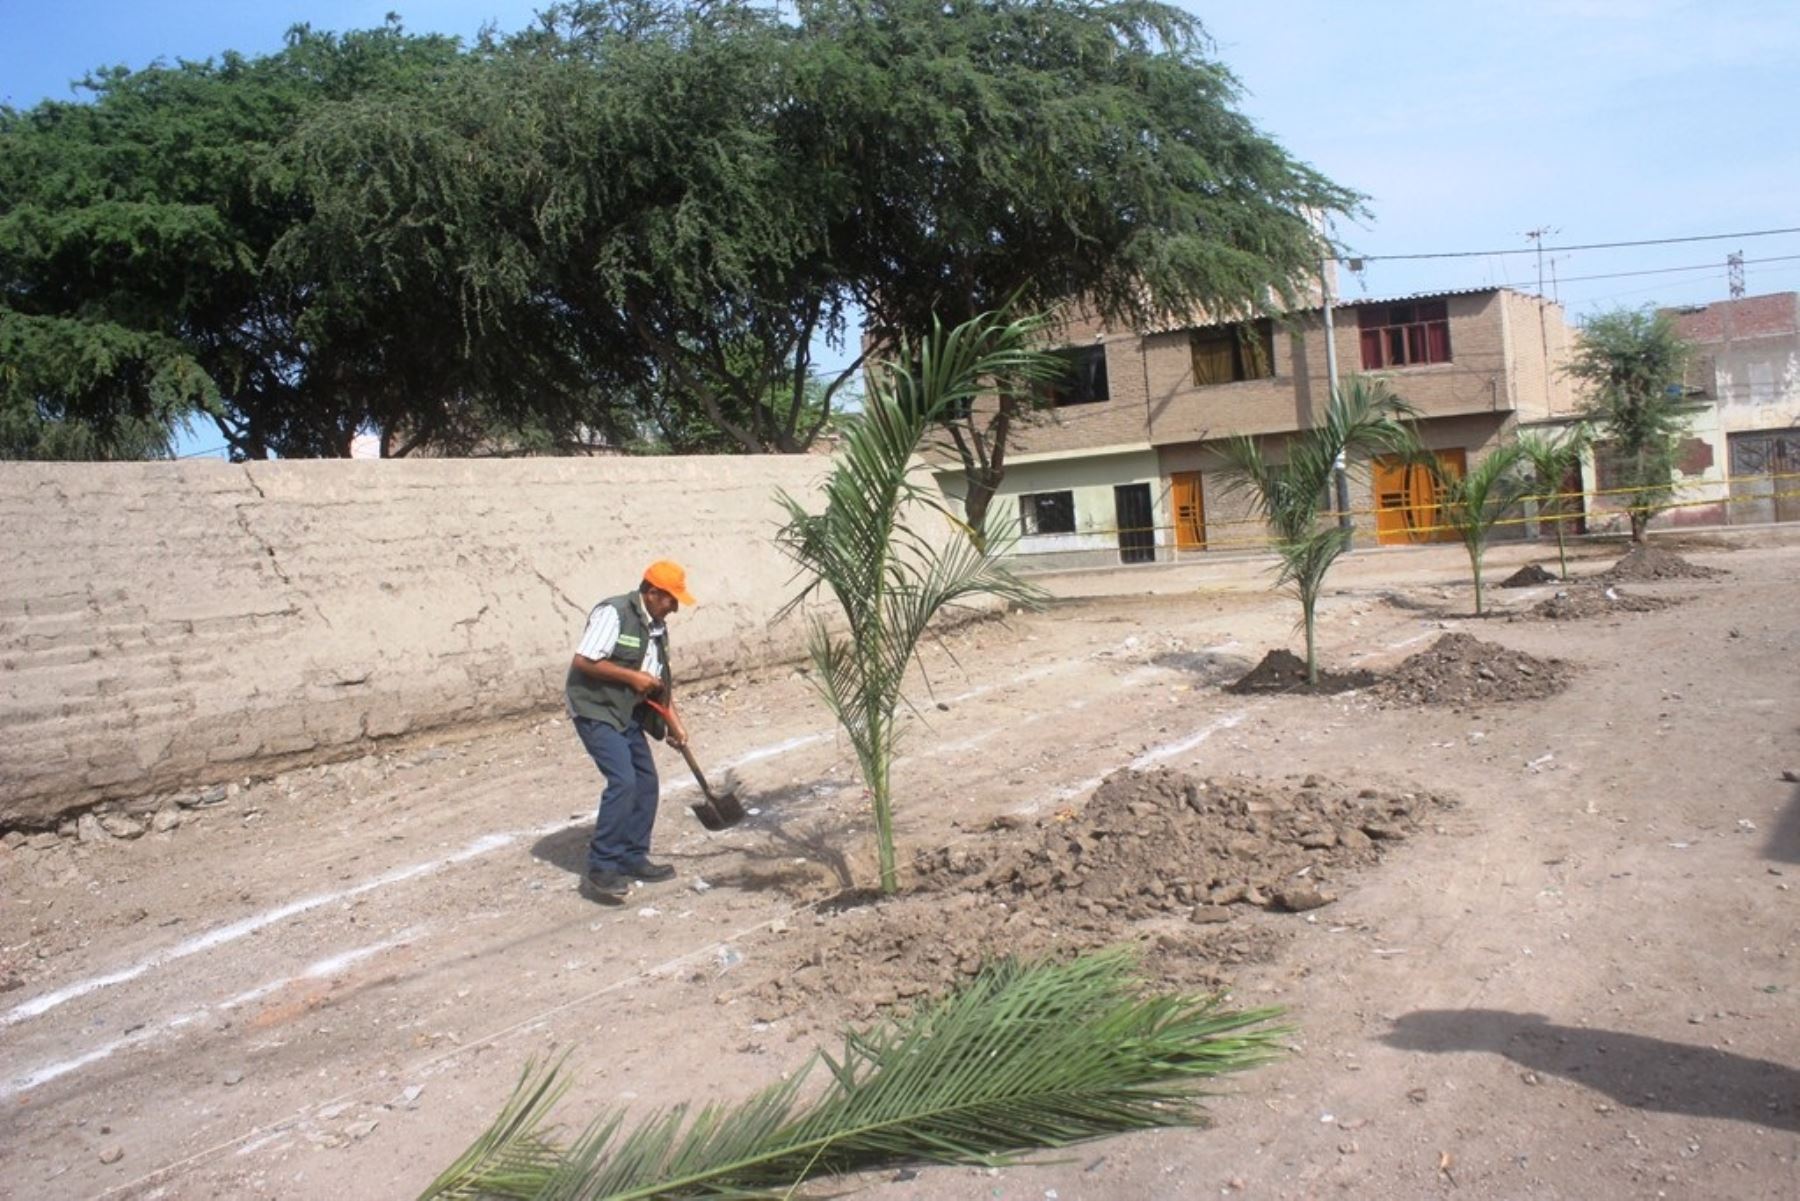 La municipalidad provincial de Chiclayo inició la reforestación con palmeras en las inmediaciones del complejo arqueológico César Vallejo, ubicado en el asentamiento humano del mismo nombre en esta ciudad, a fin de recuperar totalmente esta área.